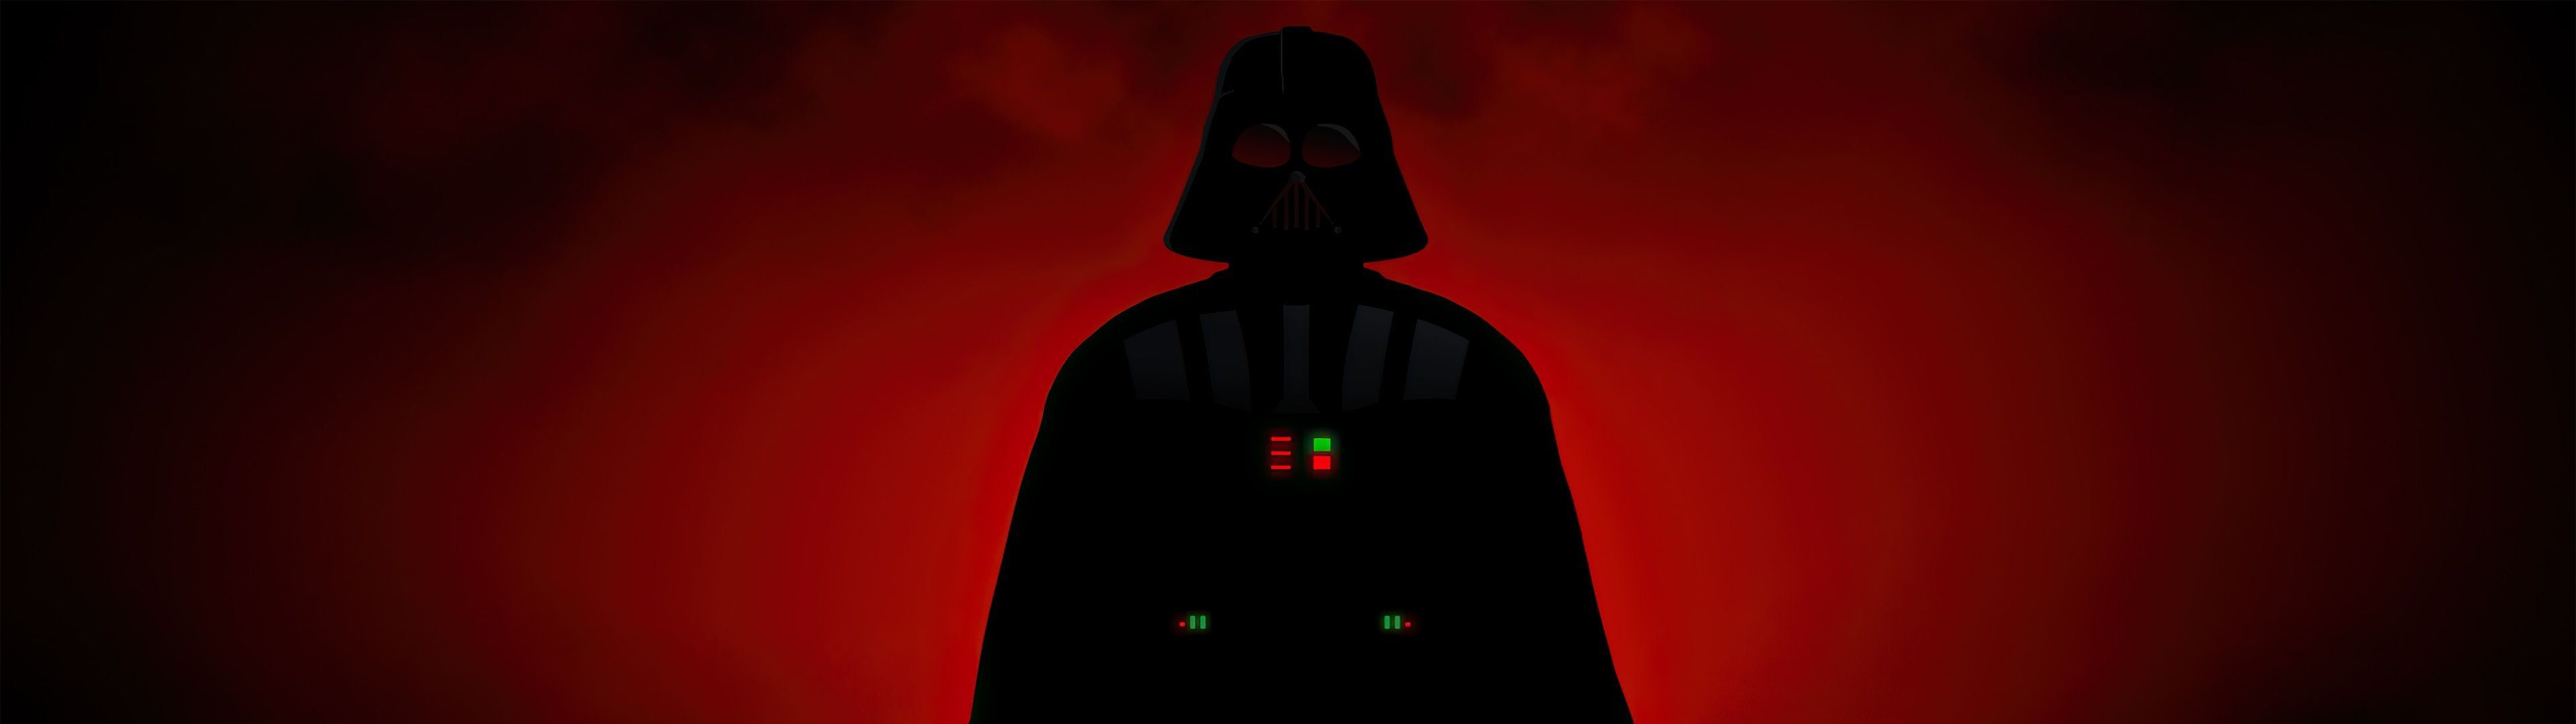 Darth Vader Wallpaper 4K, Lightsaber, Dark background